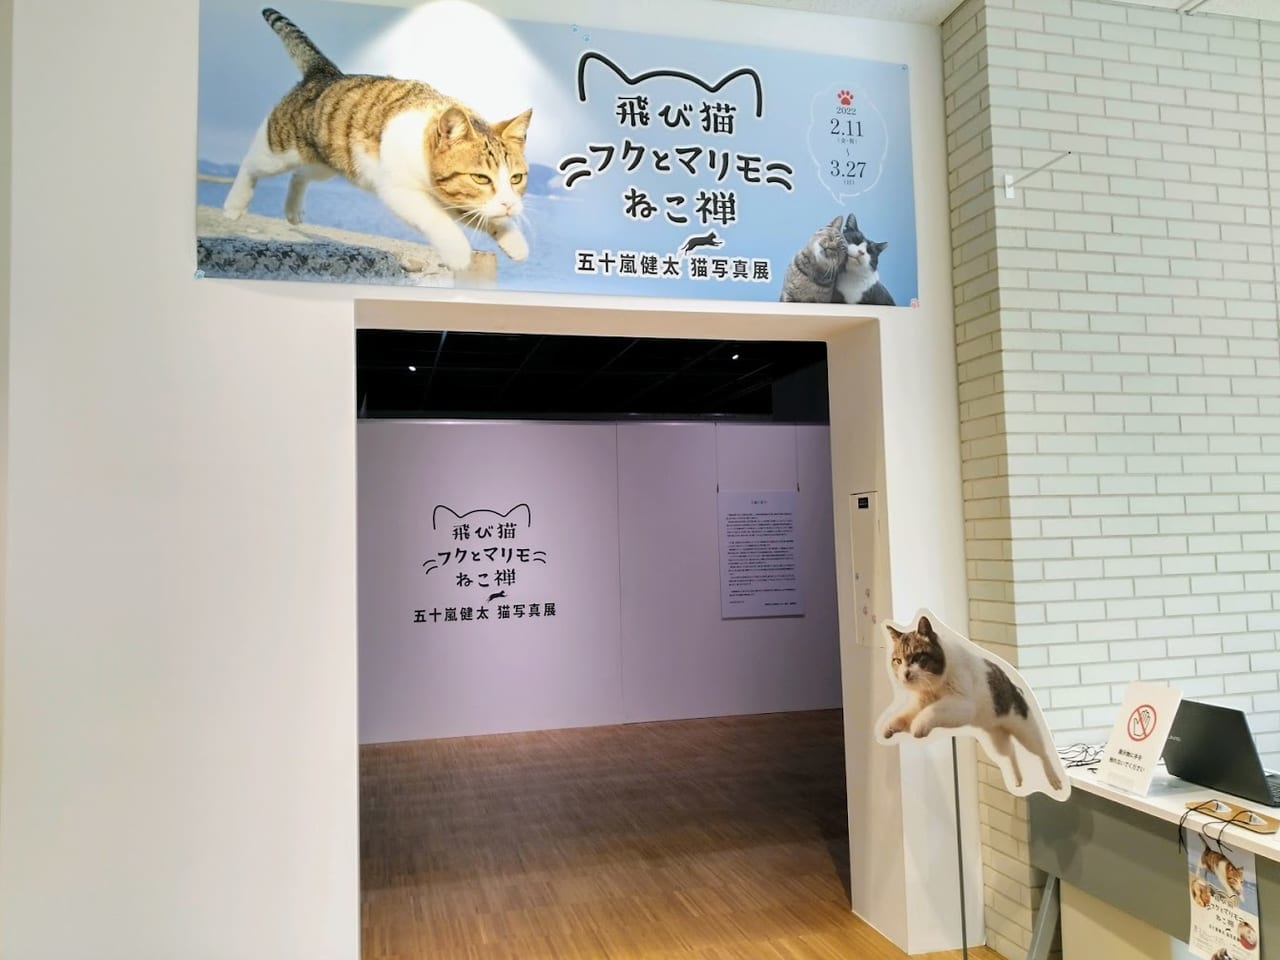 宝塚市立文化芸術センターにて五十嵐健太 猫写真展